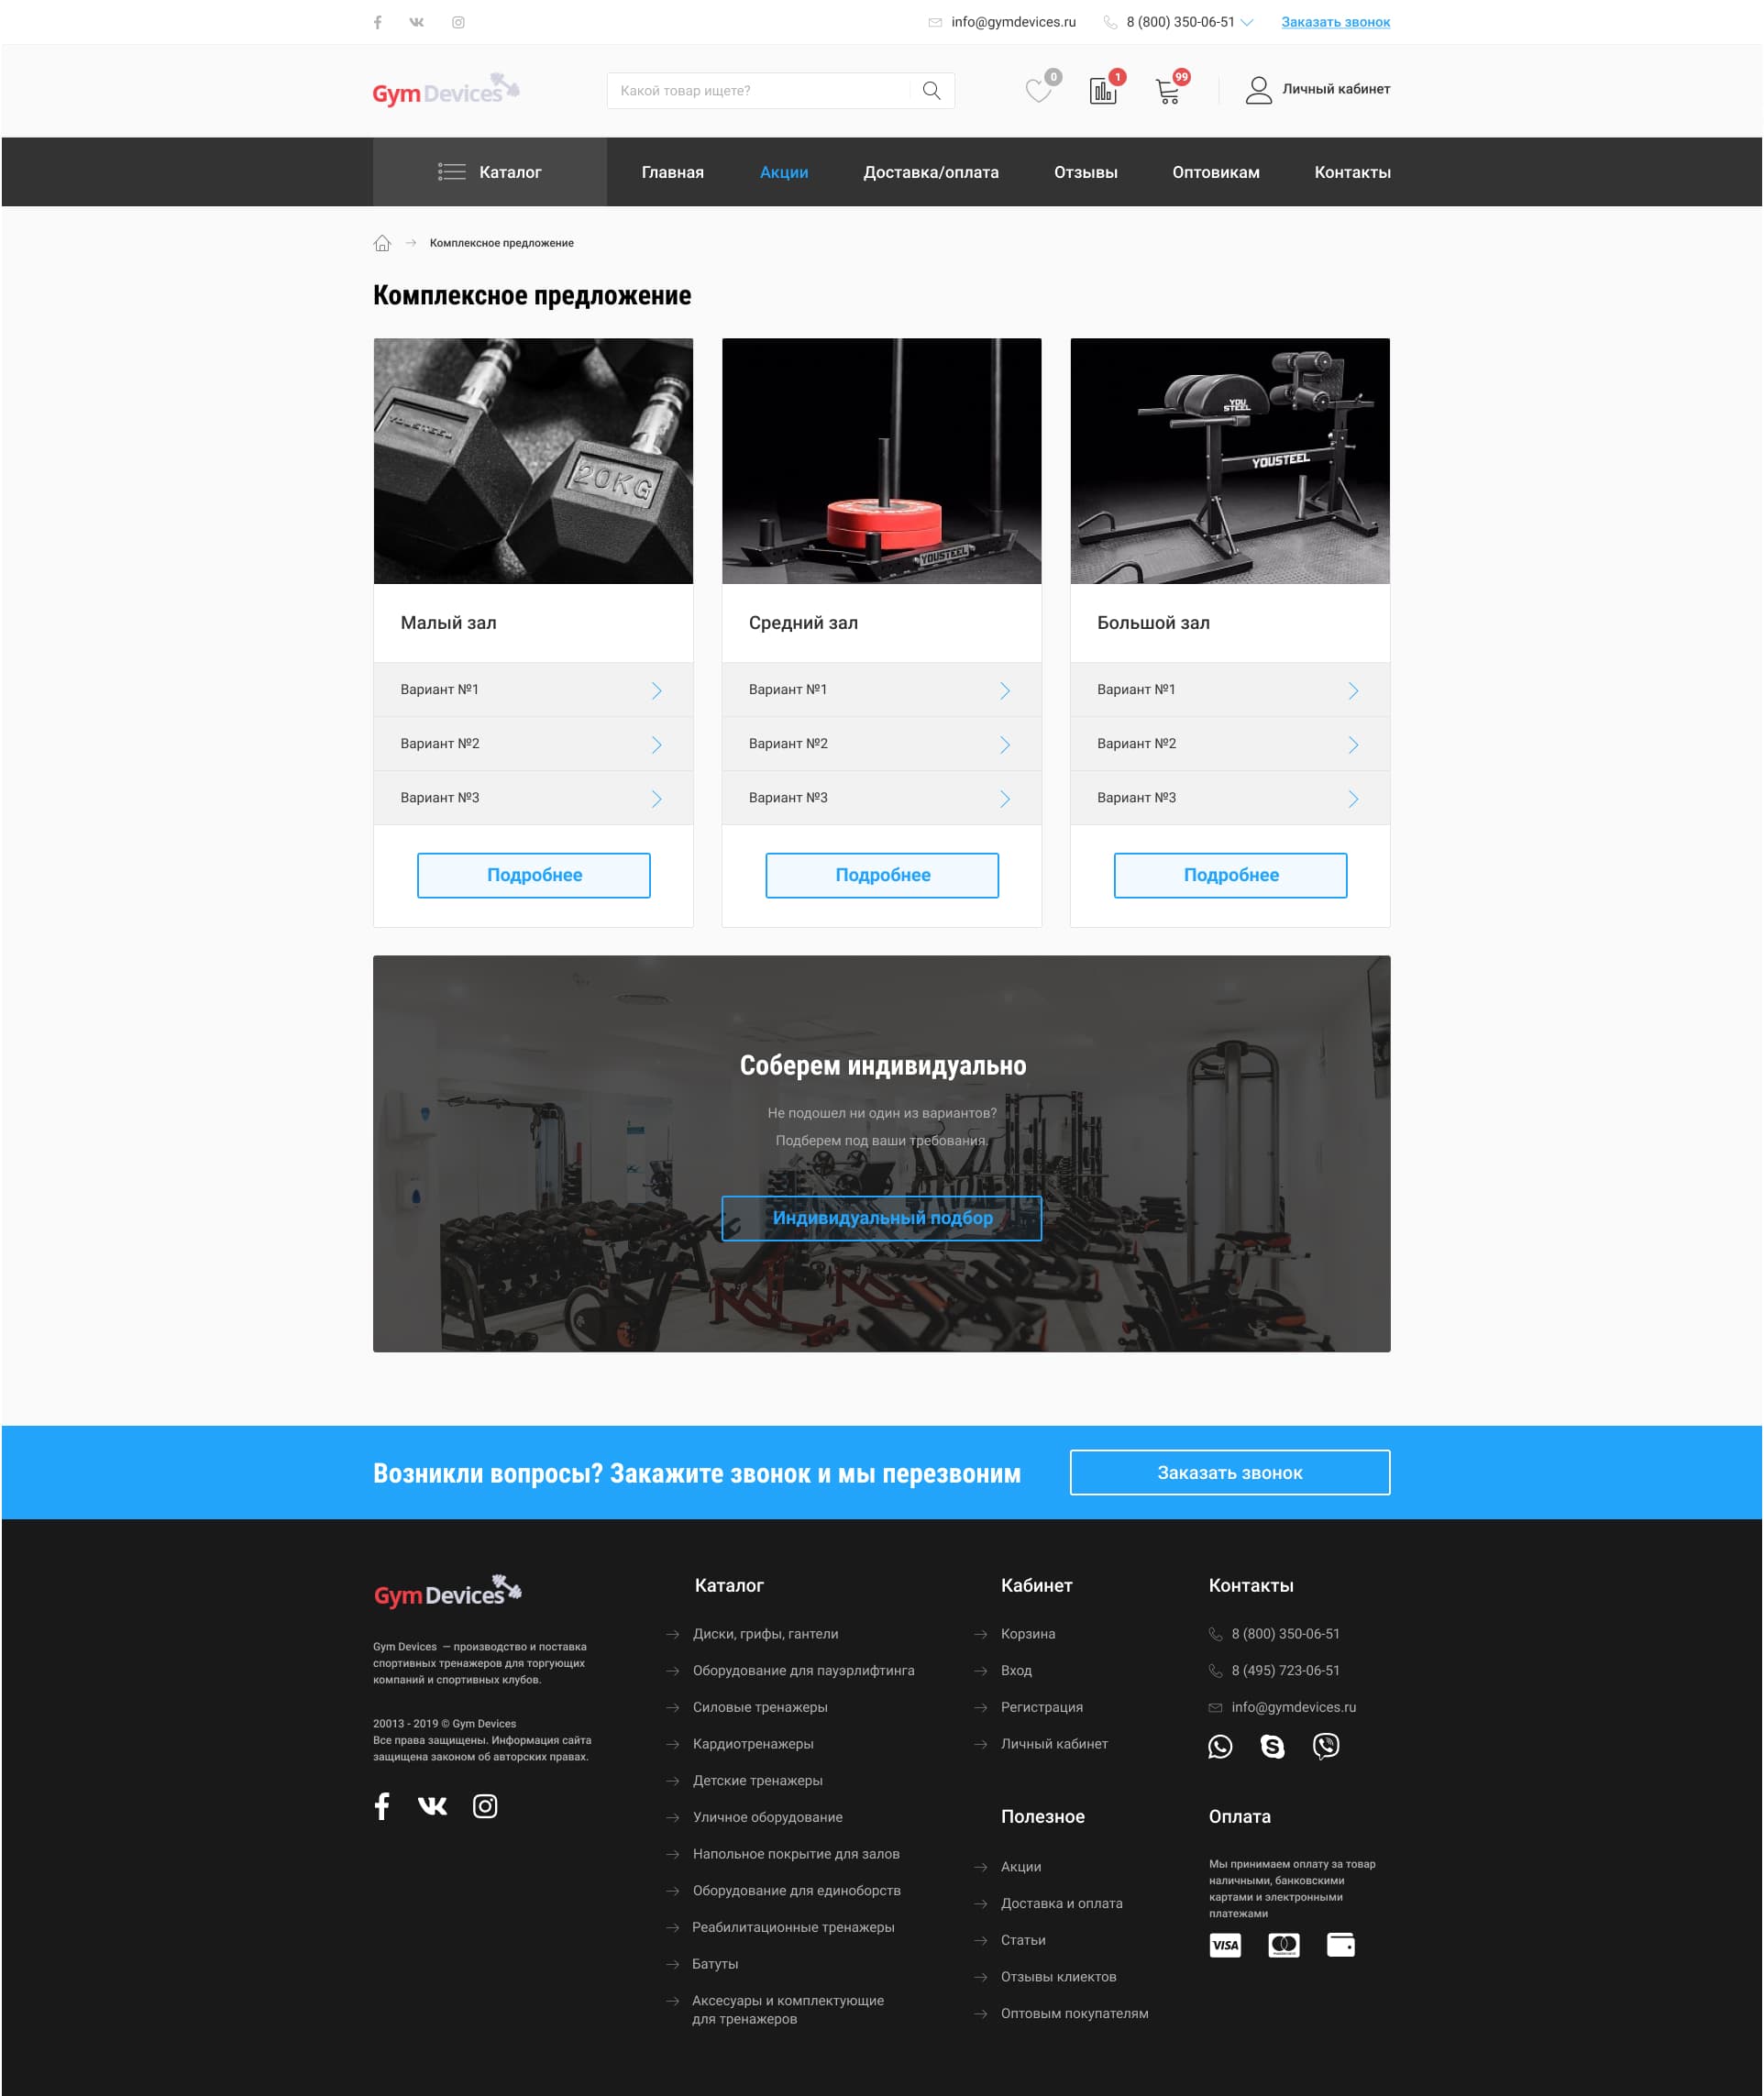 desktop version of offer page for gym devices designed by Dima Radushev